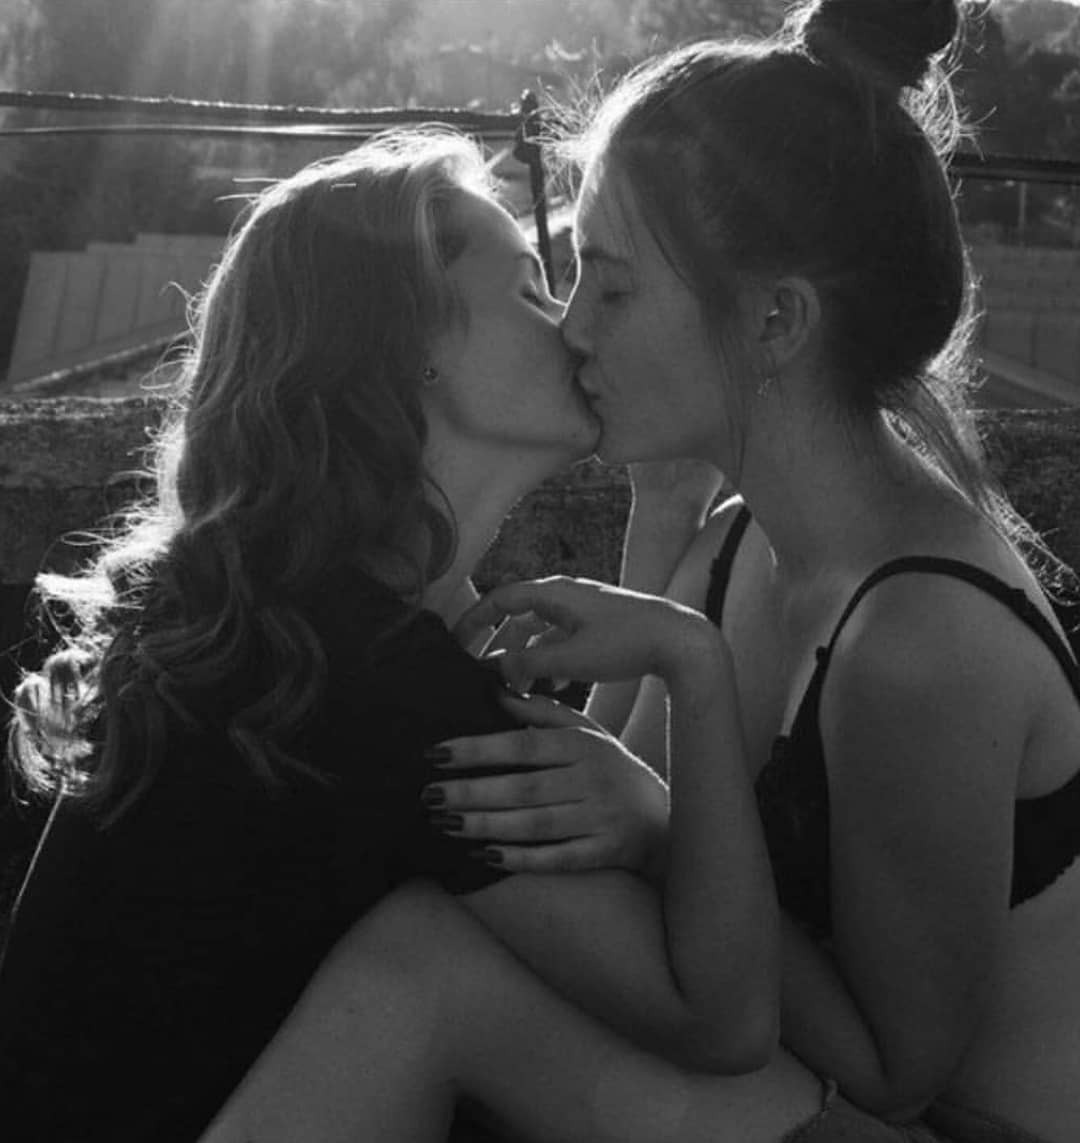 Мамаши лесбияночки в сексуальных трусиках и лифчиках любуются своей красотой перед зеркалом